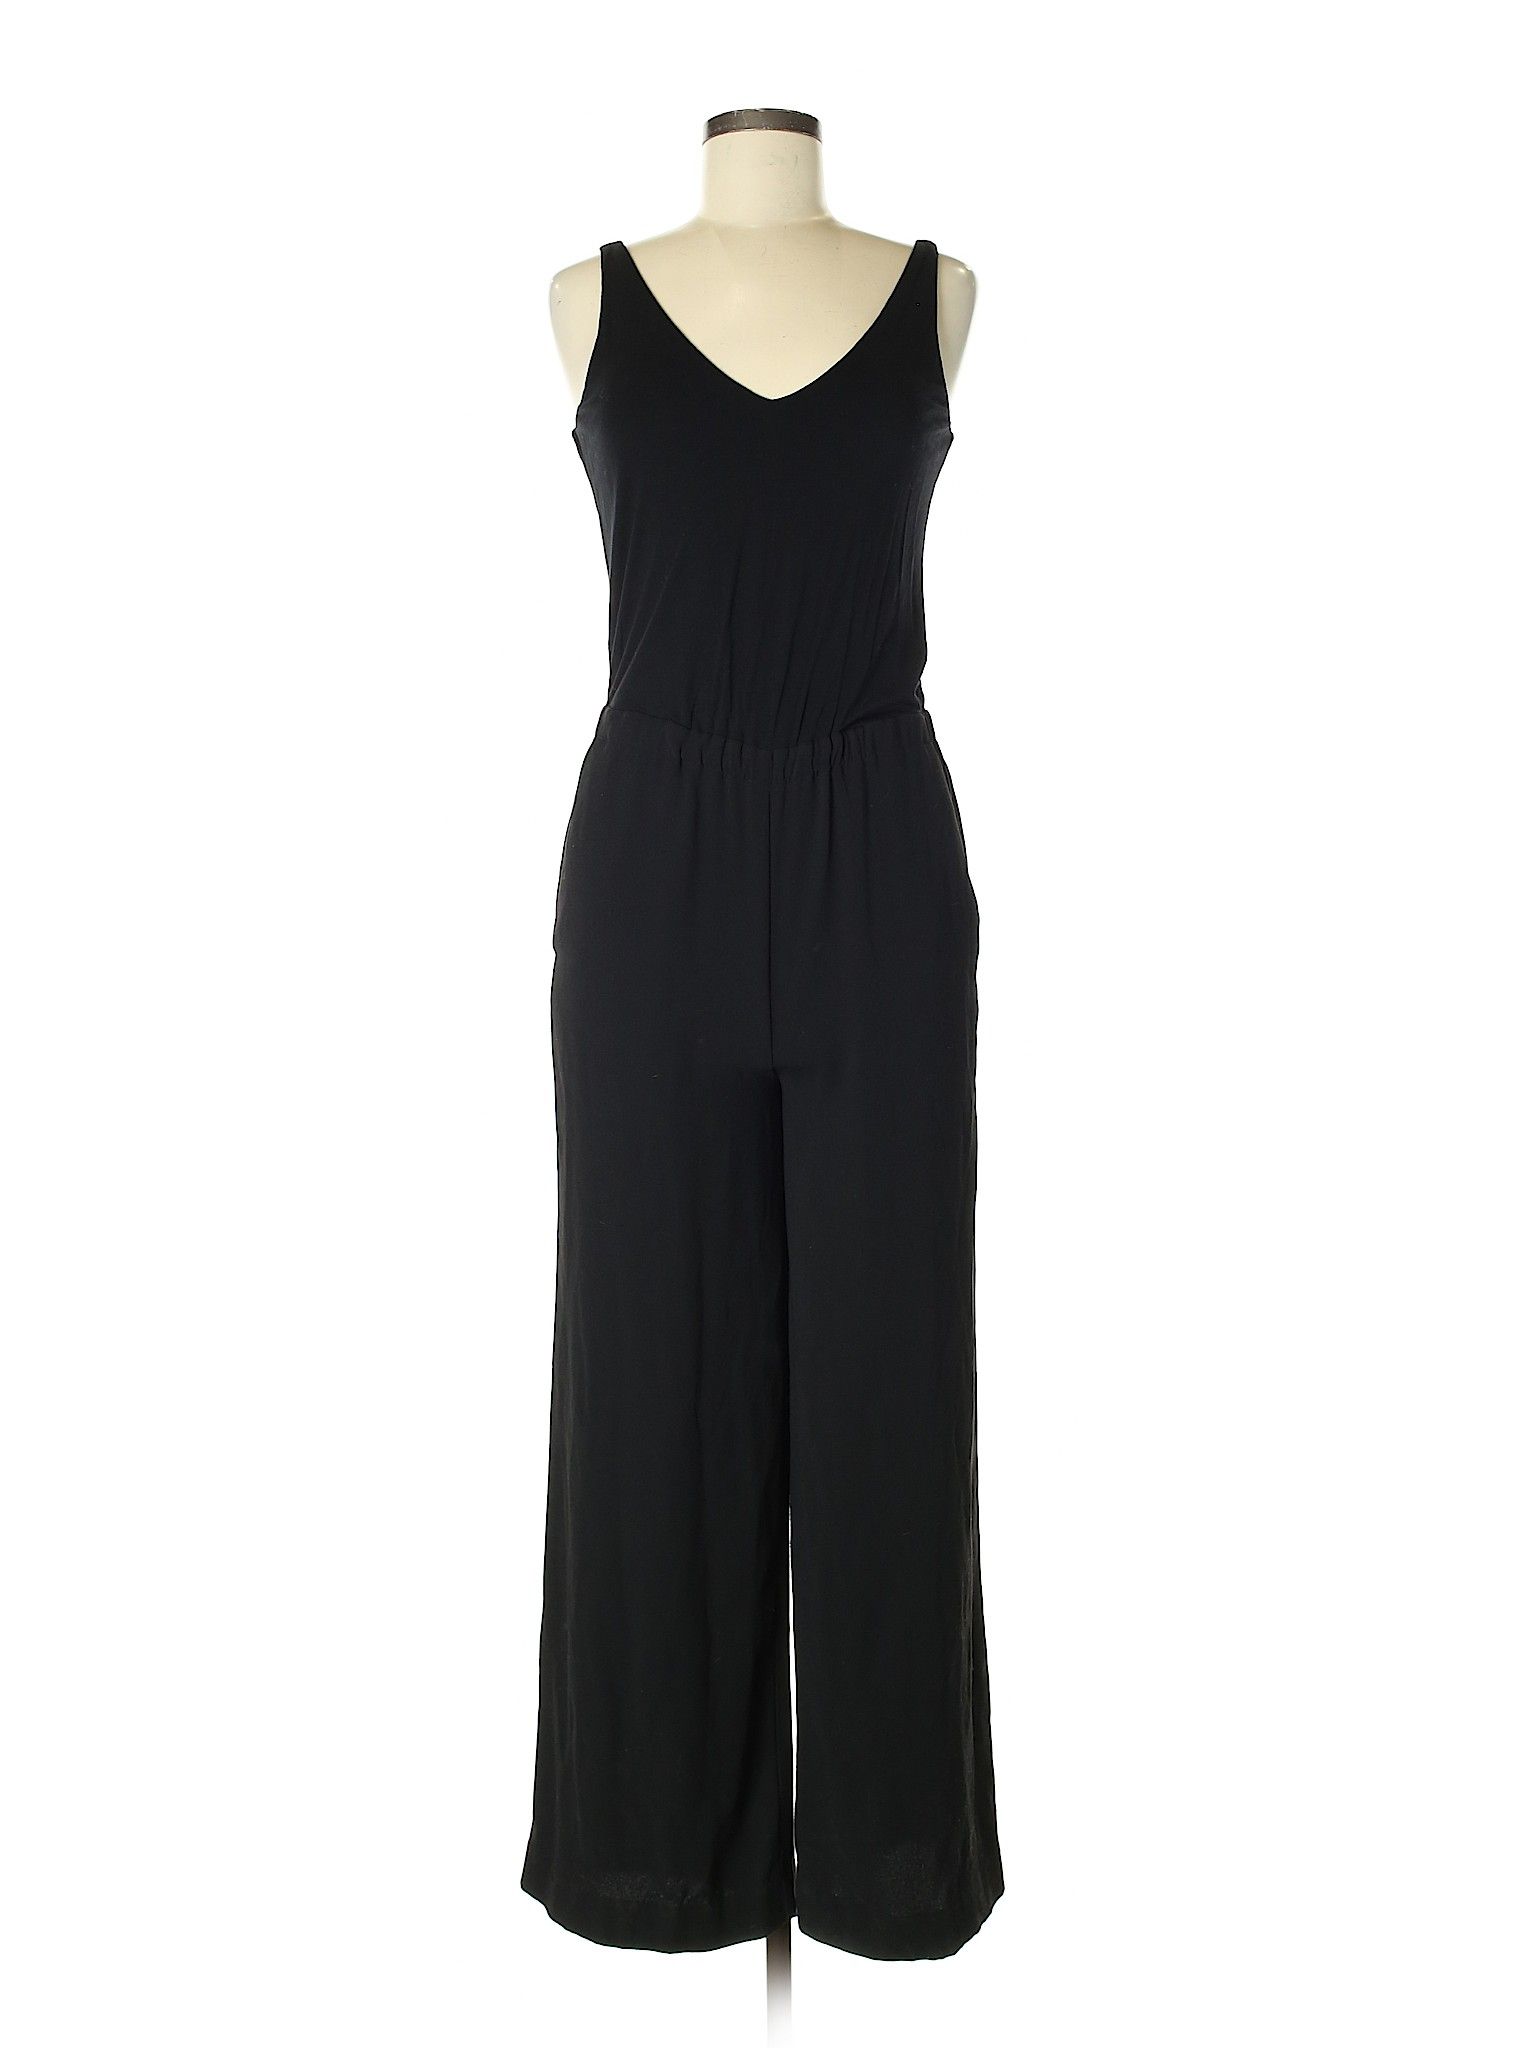 Ann Taylor LOFT Jumpsuit Size 0: Black Women's Dresses - 45321968 | thredUP